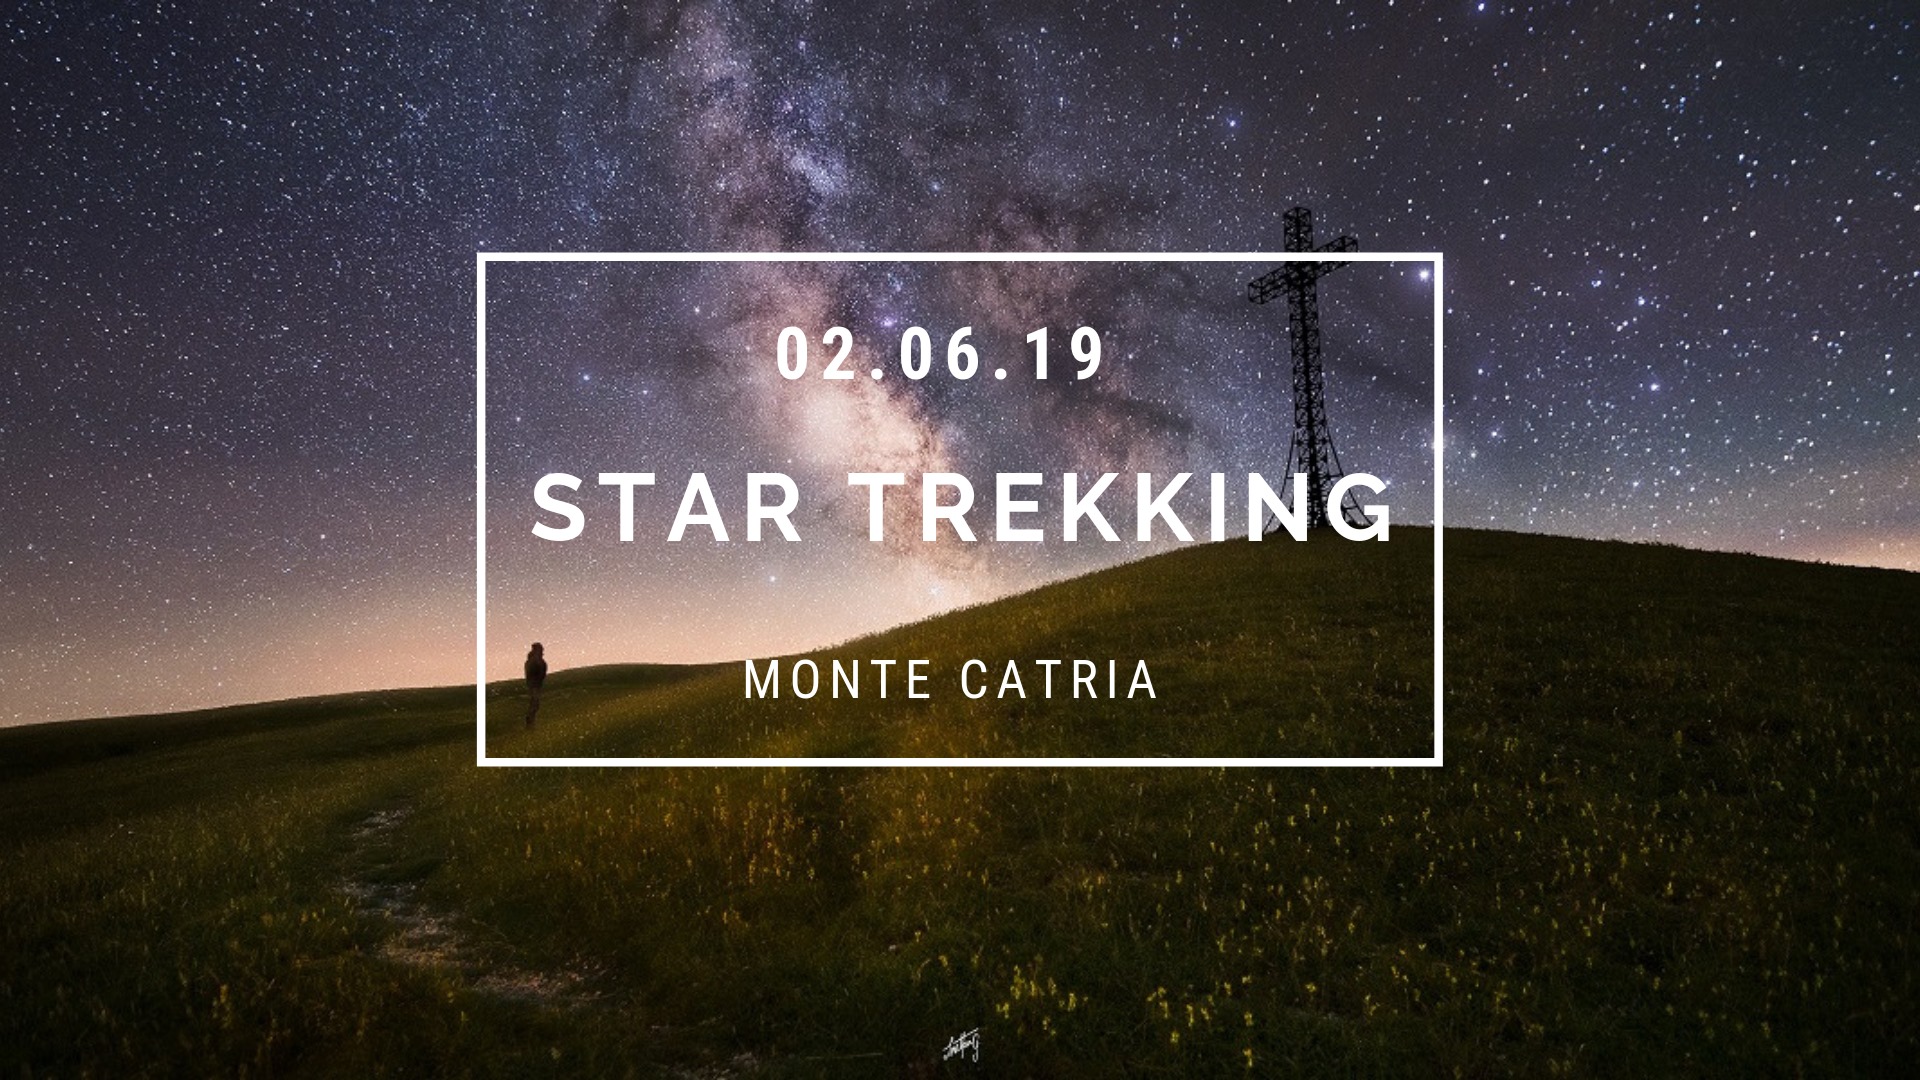 Star Trekking Monte Catria